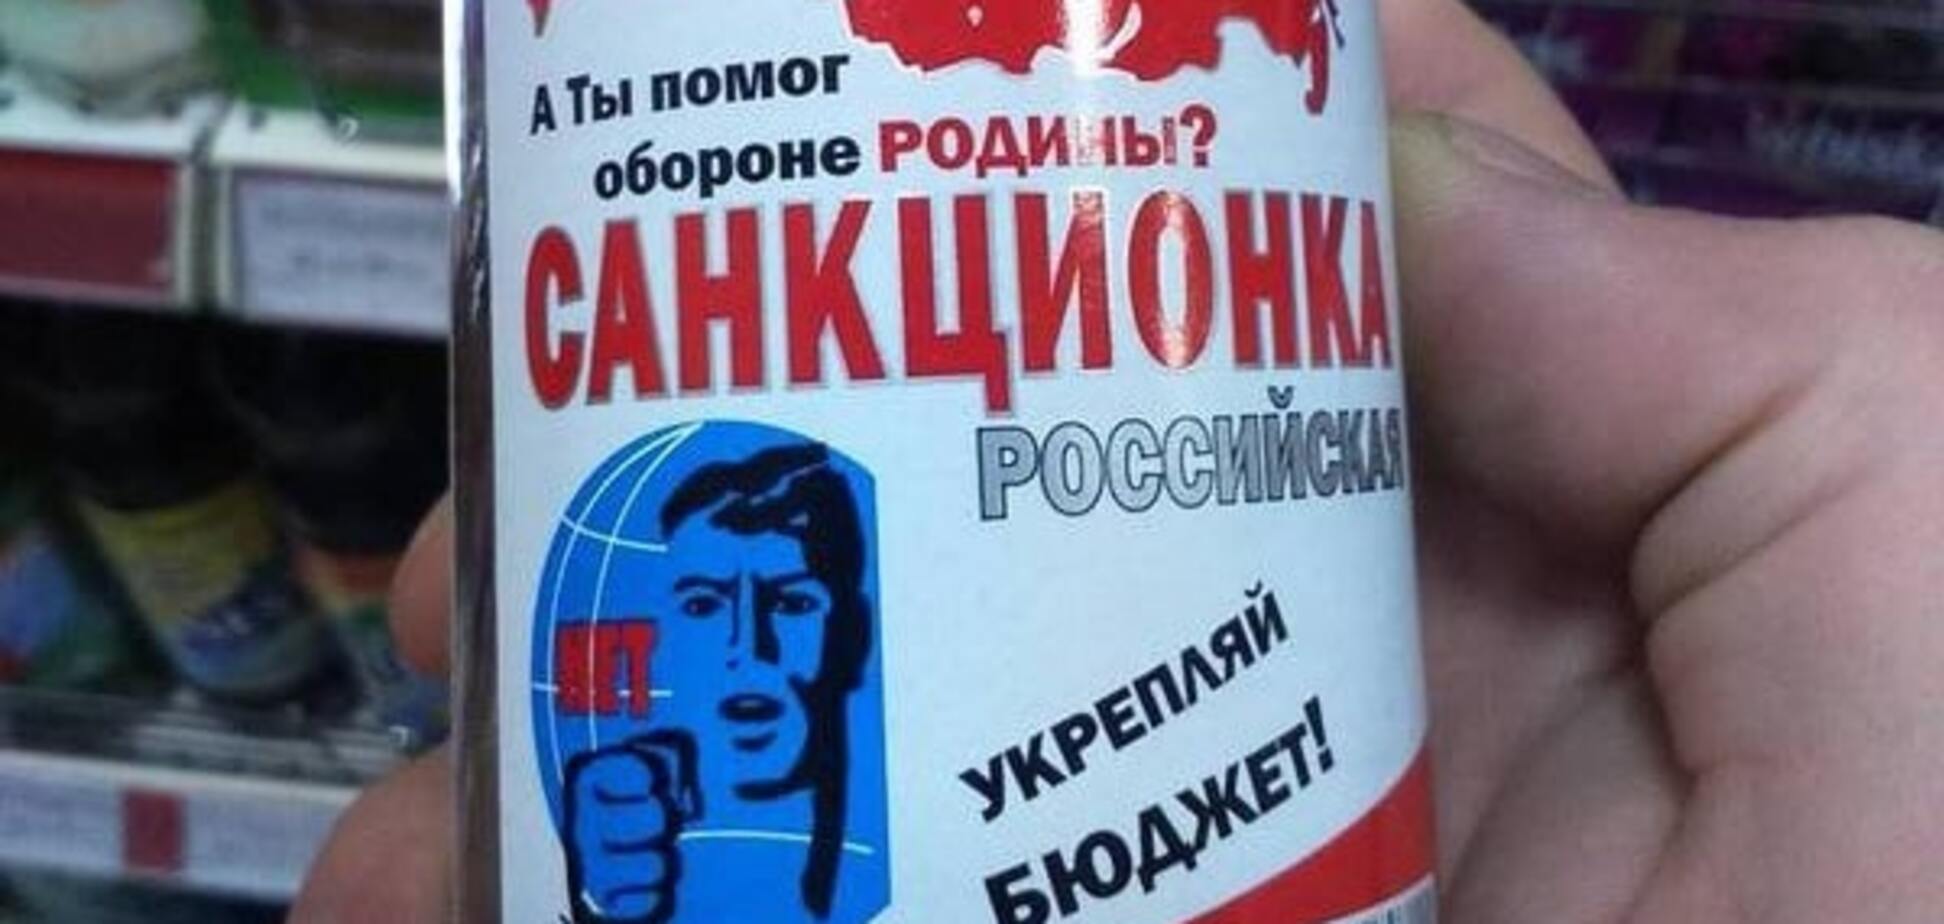 'Укрепляй бюджет': в России призвали пить санкционную водку